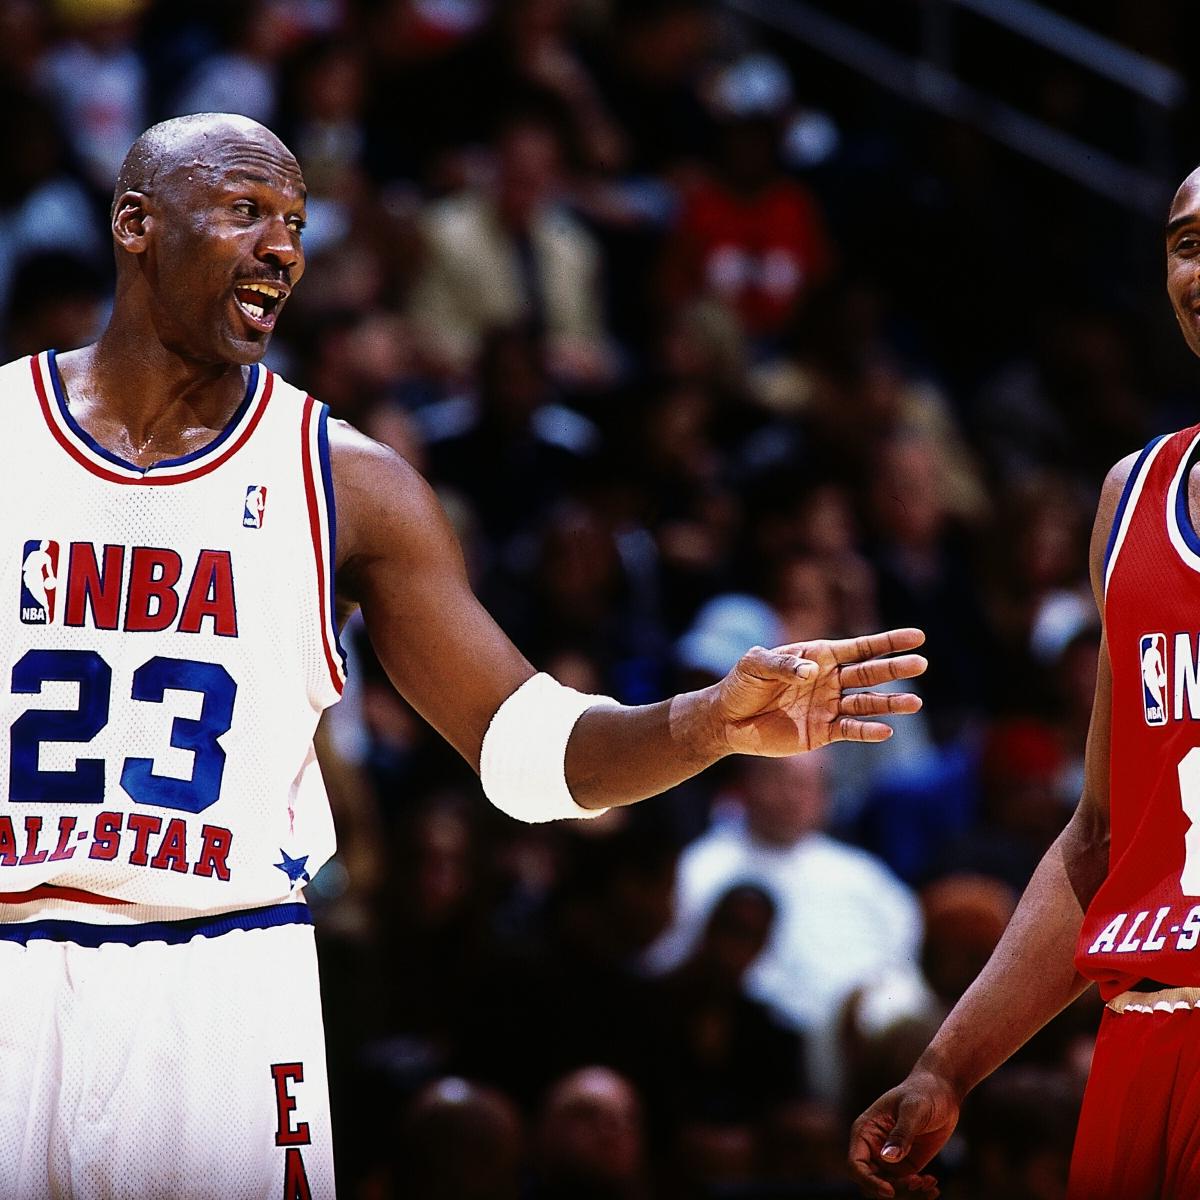 1996 NBA All-Star recap